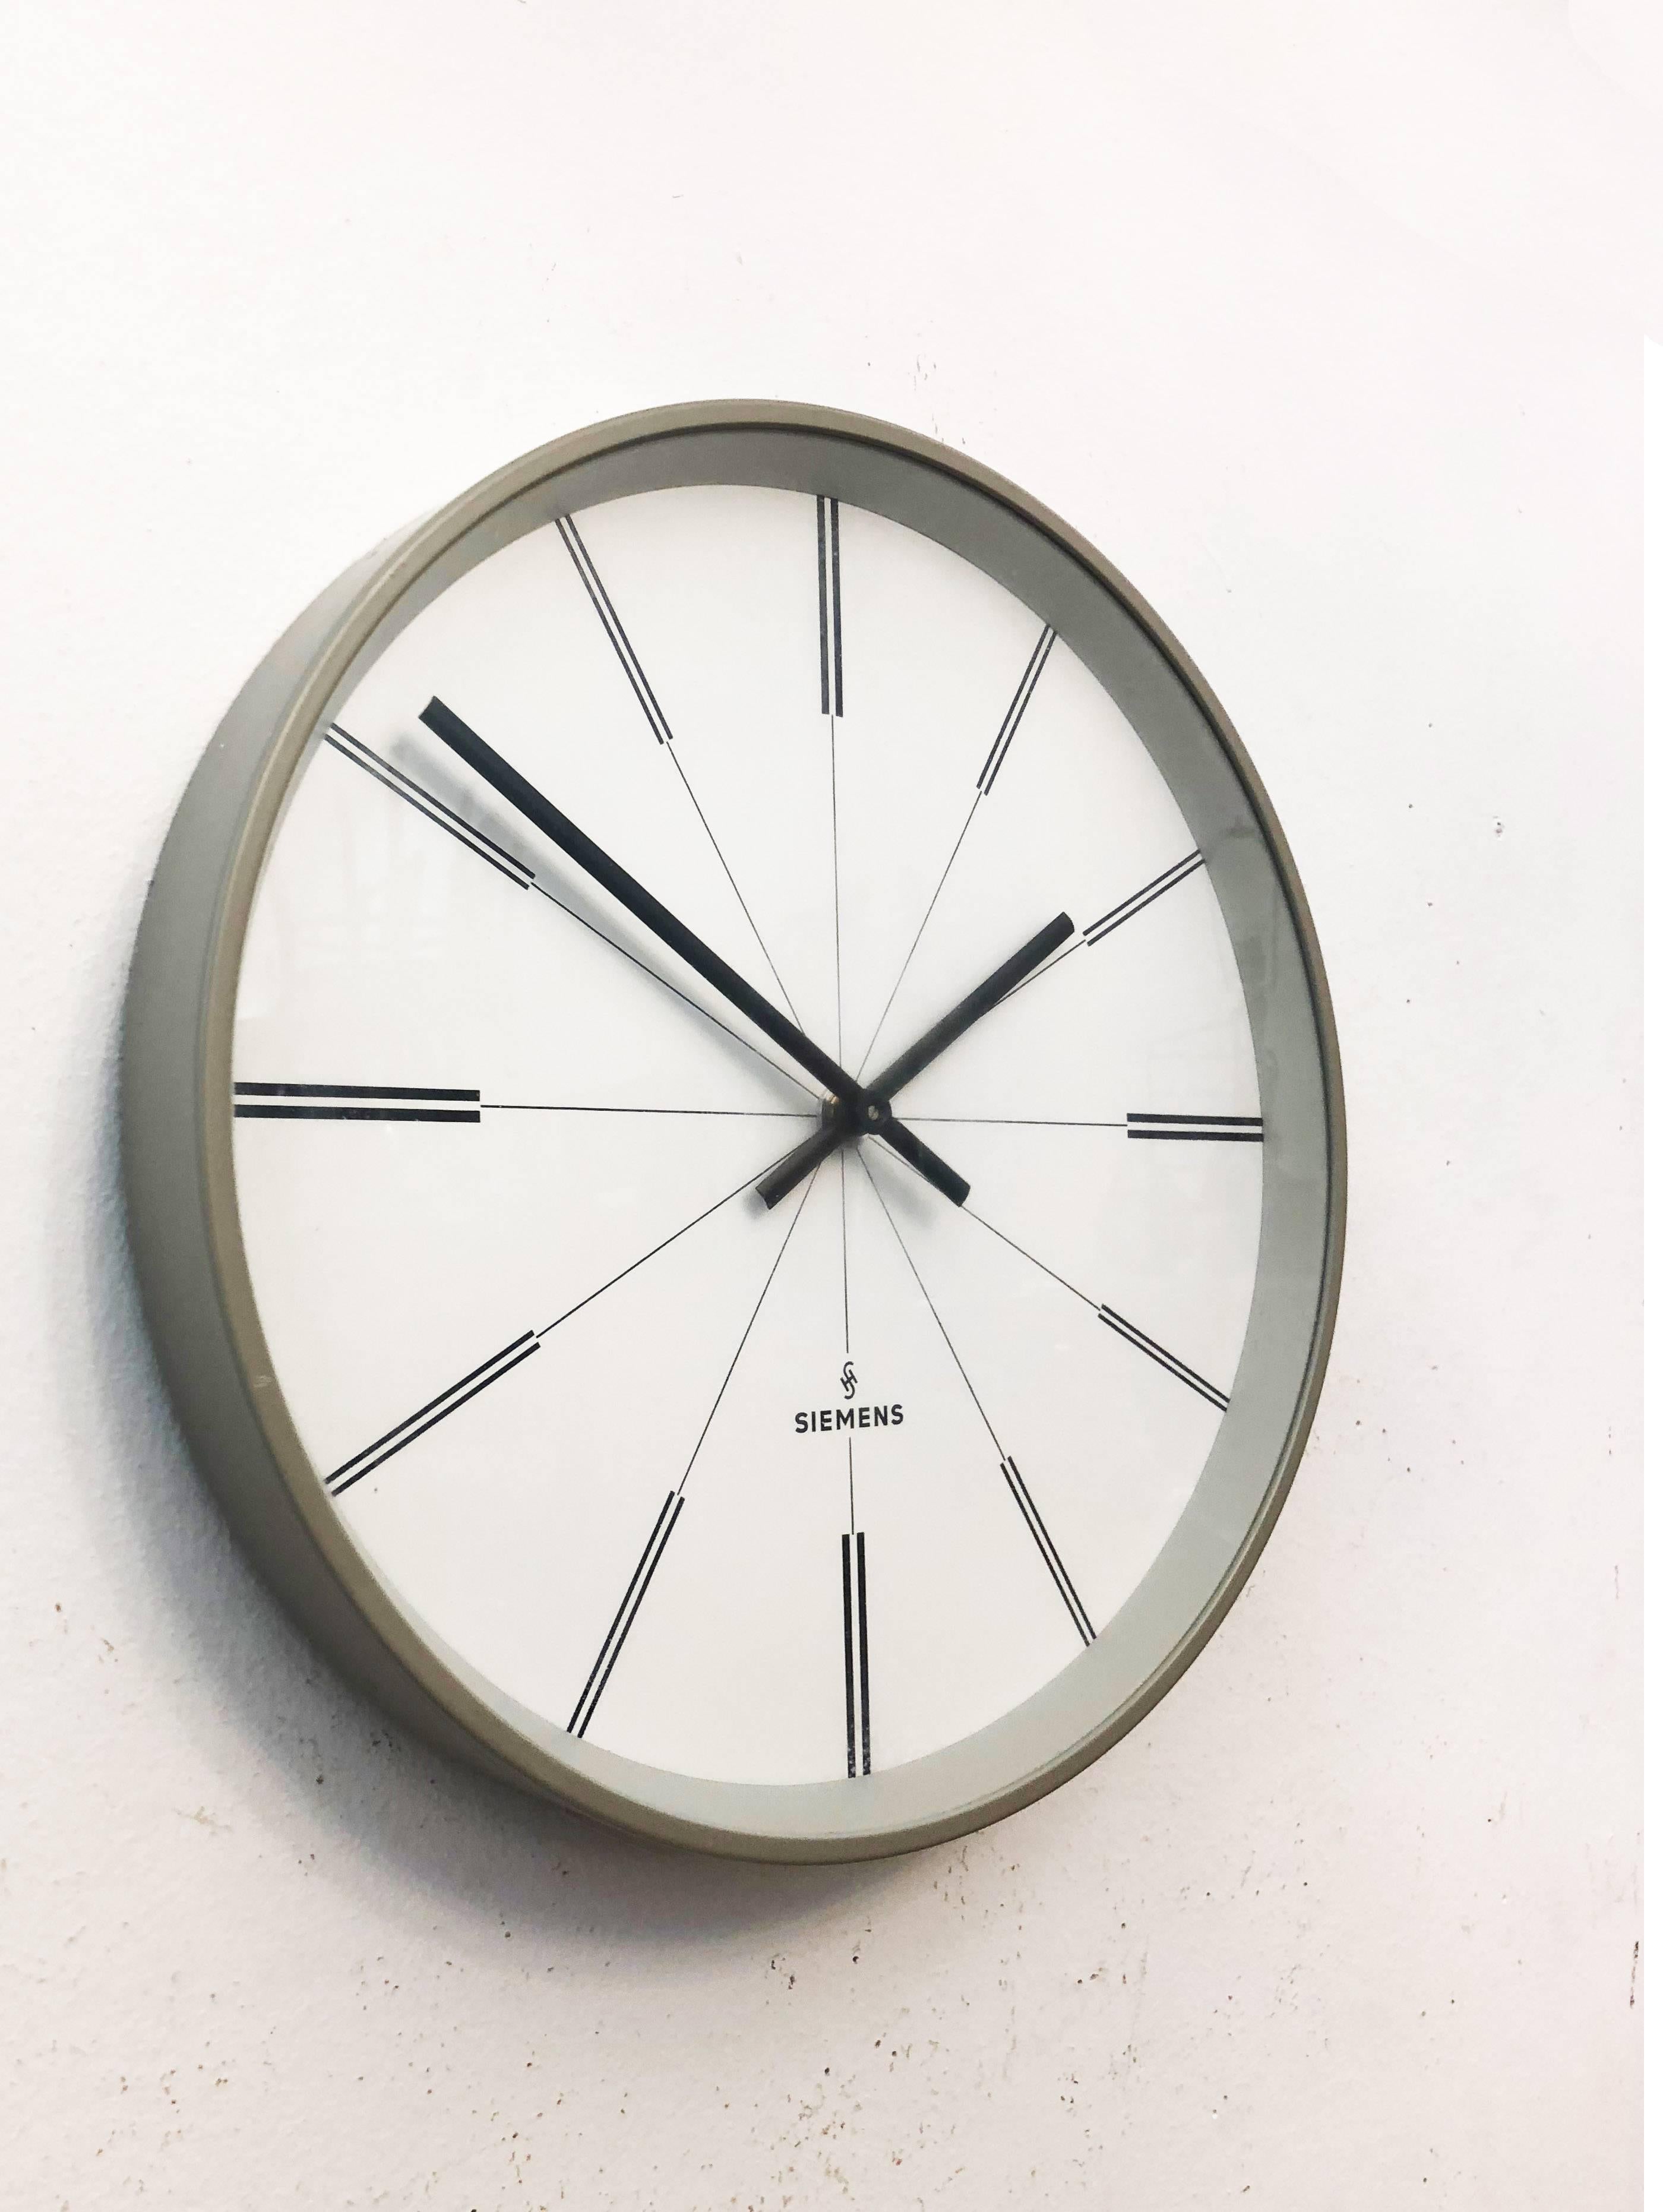 German Siemens Industrial Factory or Workshop Wall Clock For Sale